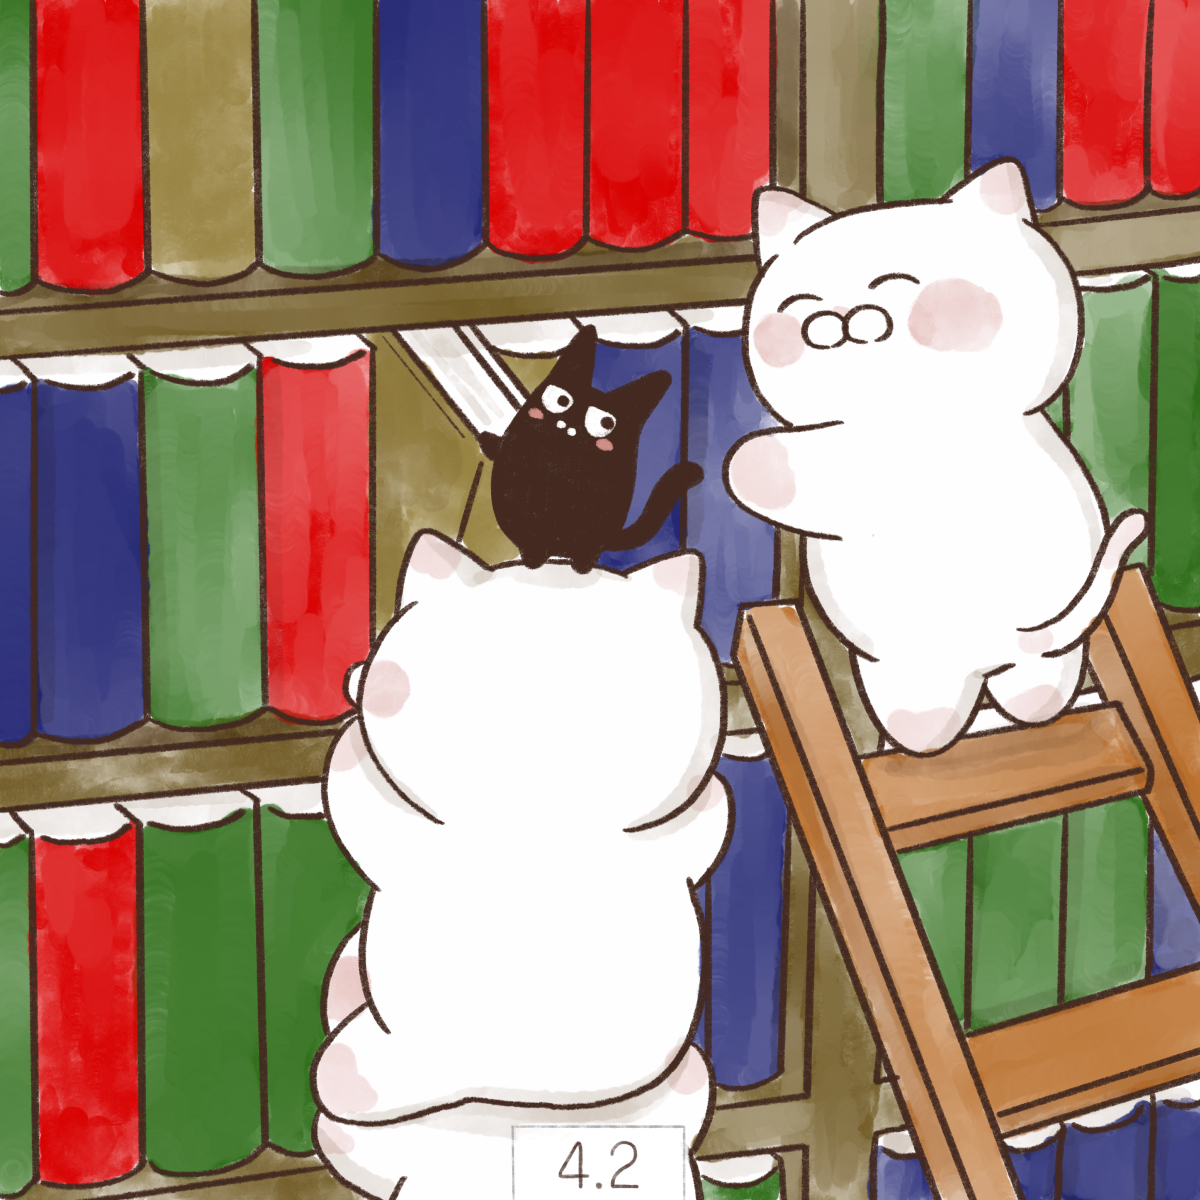 大和猫 4月2日 国際子どもの本の日 アンデルセンの誕生日にちなんで 国際児童図書評議会 Ibby が1967年に制定しました 図書館開設記念日 明治5年旧暦4月2日に 東京 湯島に日本初の官立公共図書館 東京書籍館が開設されたことに由来します